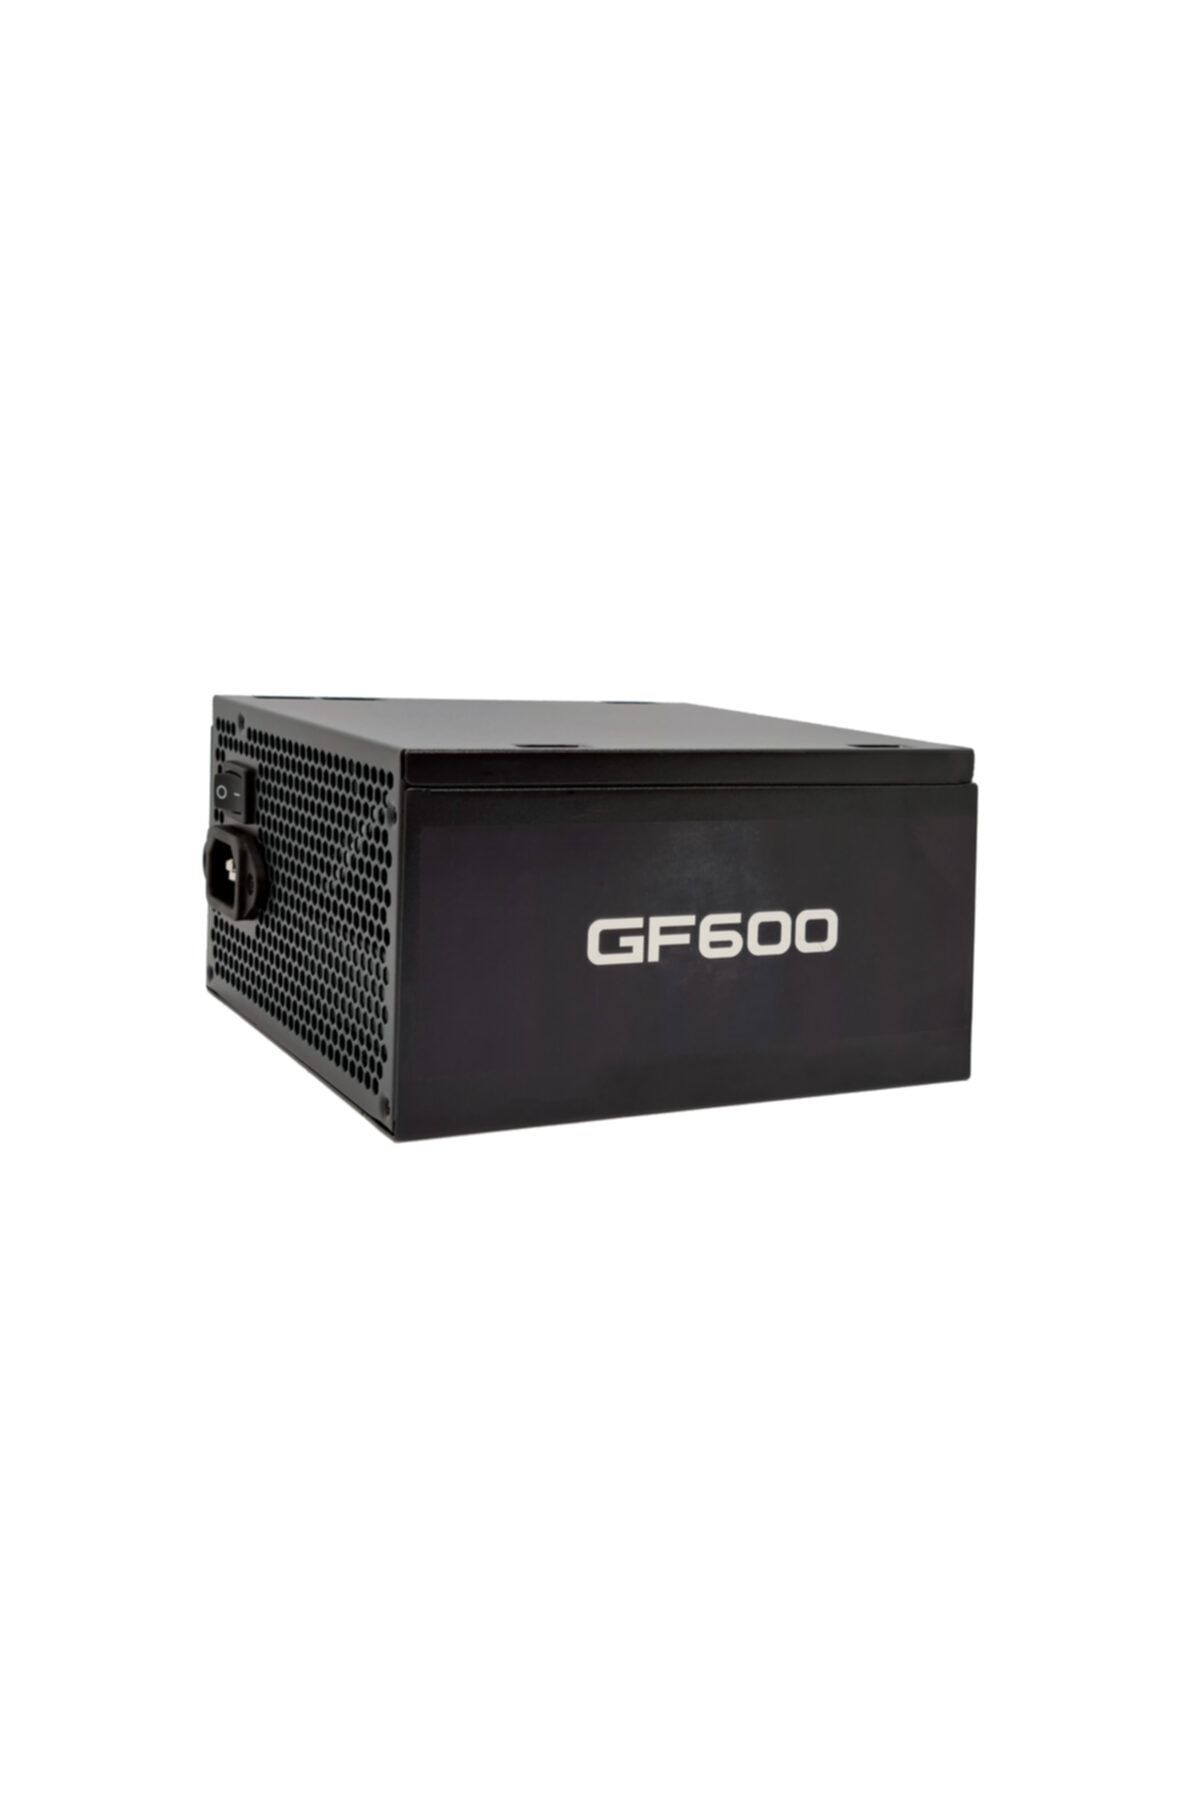 GAMEFORCE Gf600 600w 80+ Bronz Sertifikalı Güç Kaynağı